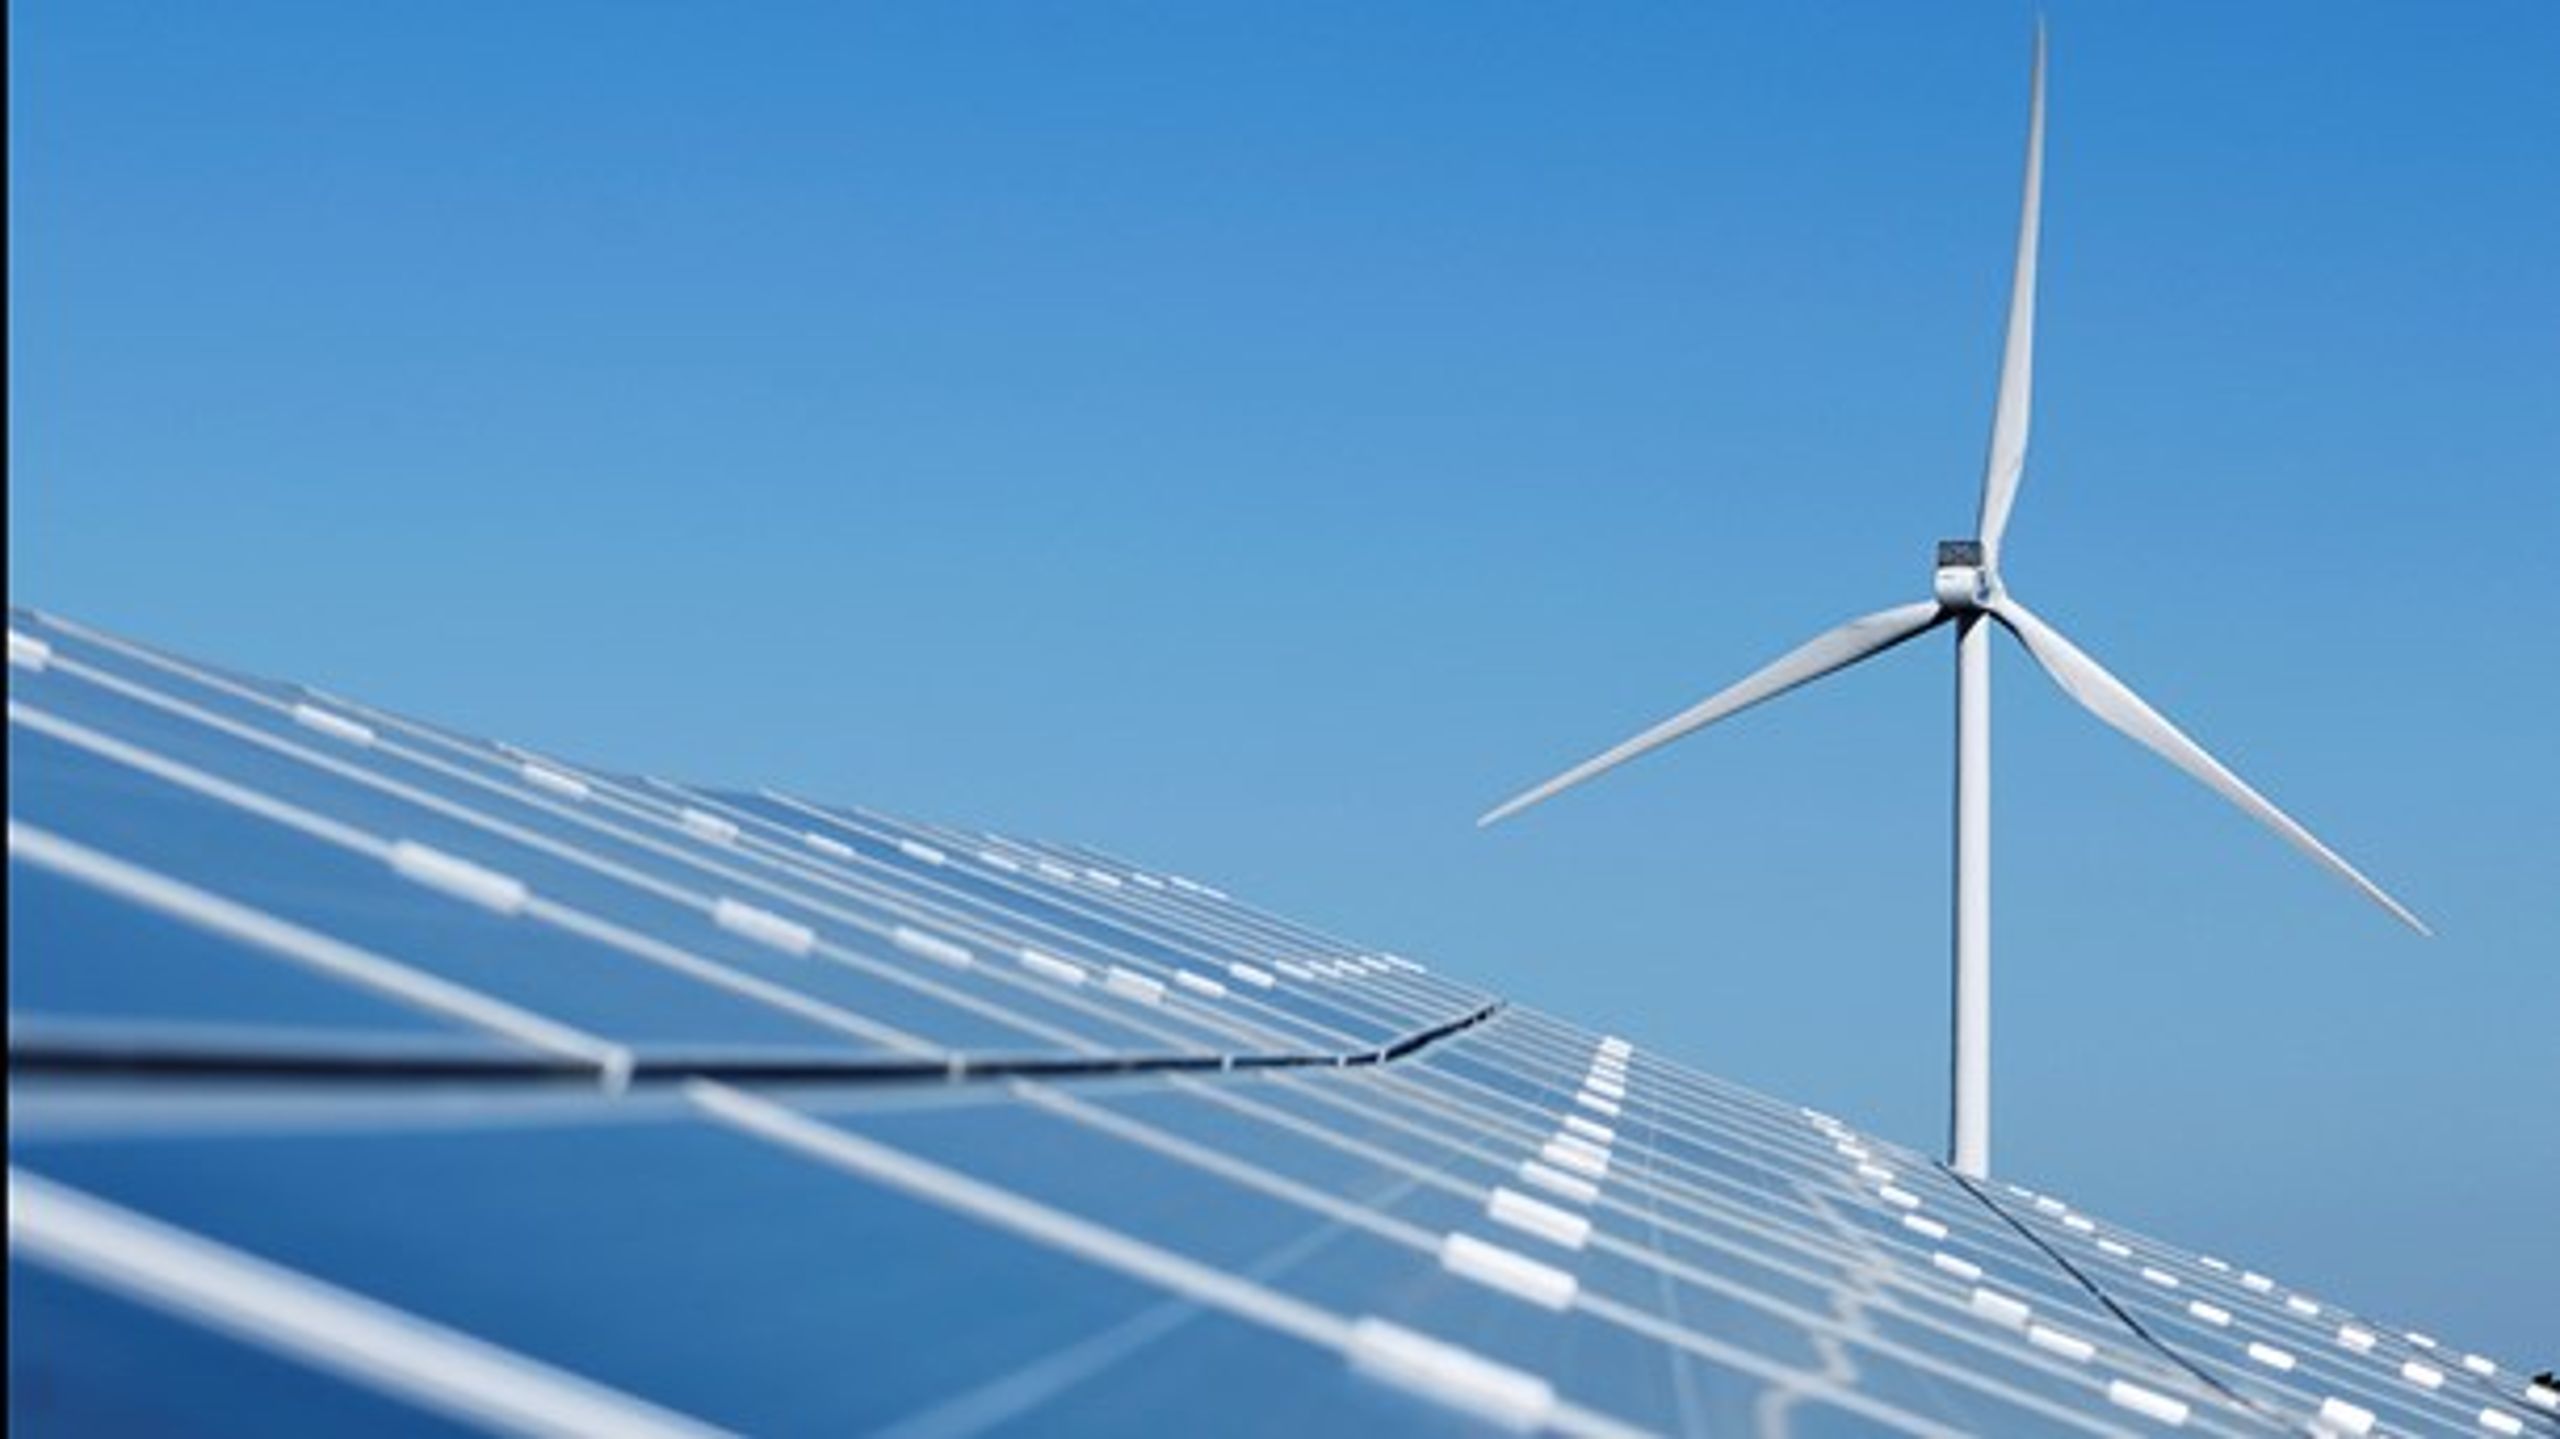 Store sol- og vindprojekter vil blive sat på standby, hvis det offentlige ikke giver prisstøtte, skriver European Energys direktør.